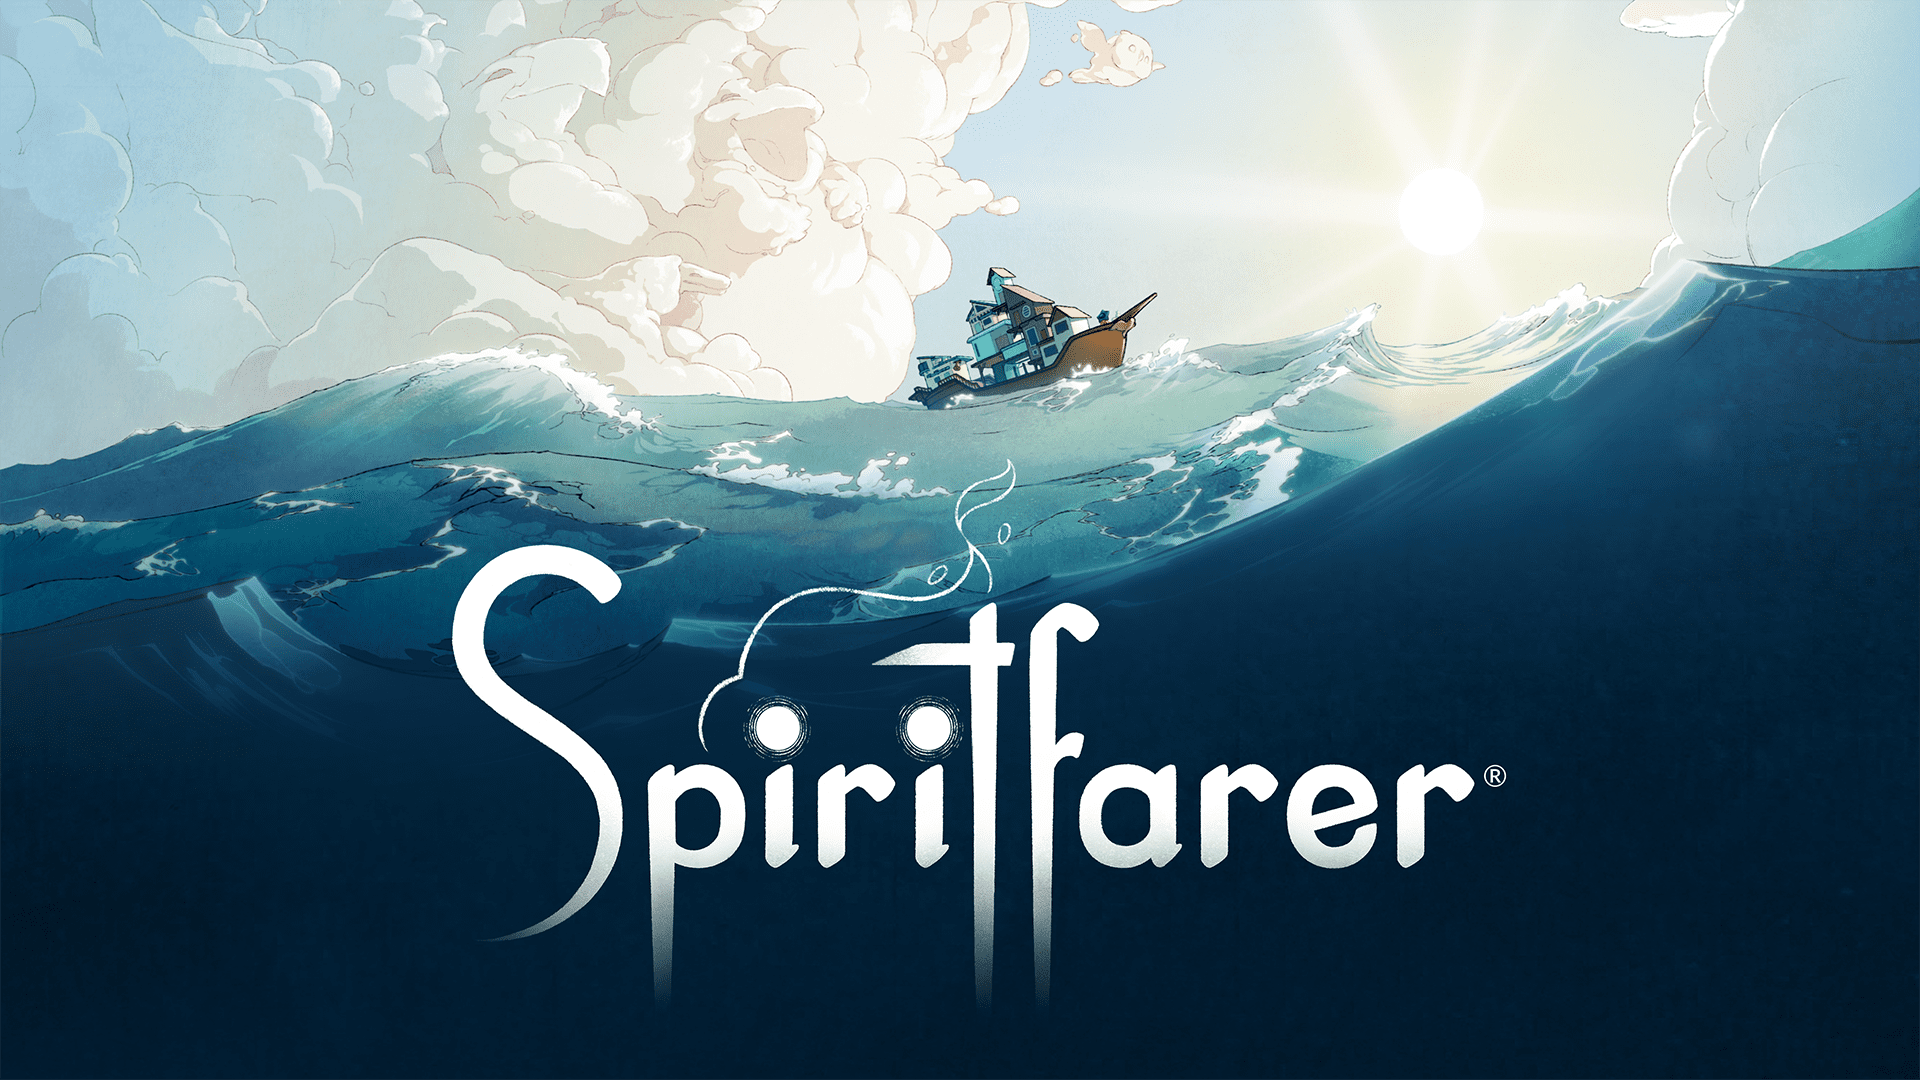 Những gì chúng ta đang chơi: 'Spiritfarer' cho thấy những gì chúng ta để lại phía sau khi chết